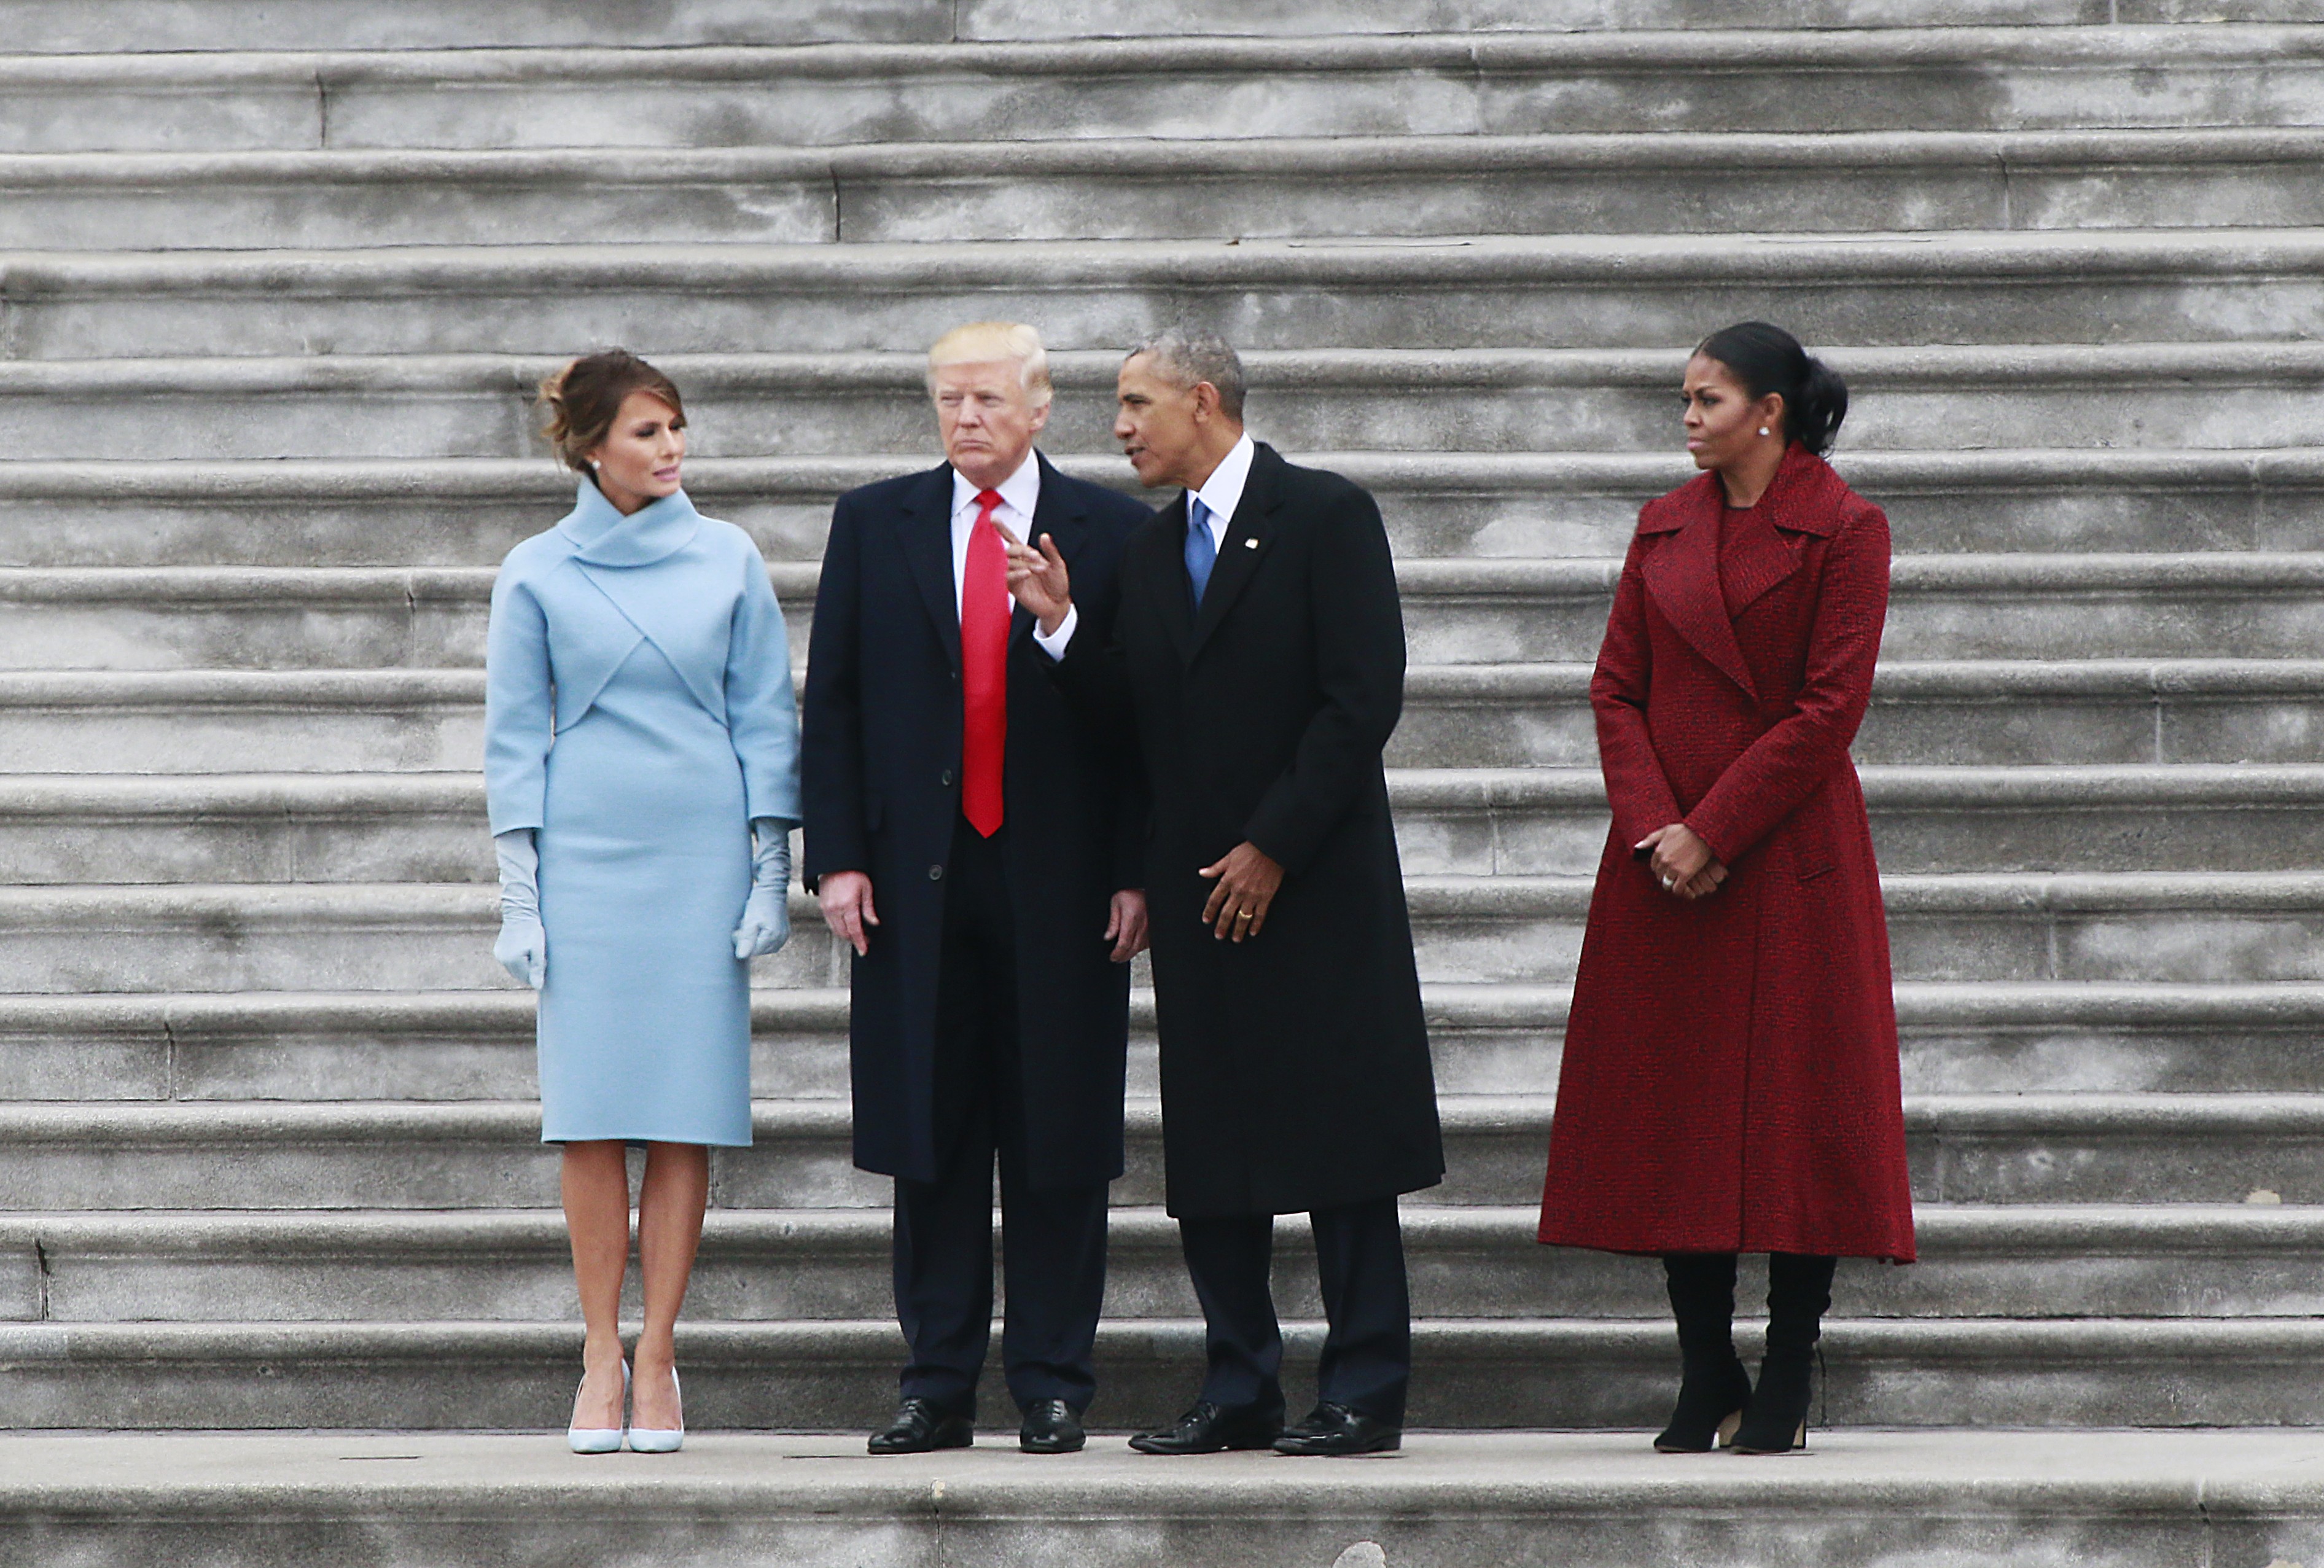 Президент США Дональд Трамп (второй слева), бывший президент США Барак Обама, супруга Д. Трампа Меланья Трамп (слева) и супруга Б. Обамы Мишель Обама на церемонии инаугурации Д. Трампа в Вашингтоне. Фото: &copy; РИА Новости/Джереми Хоган